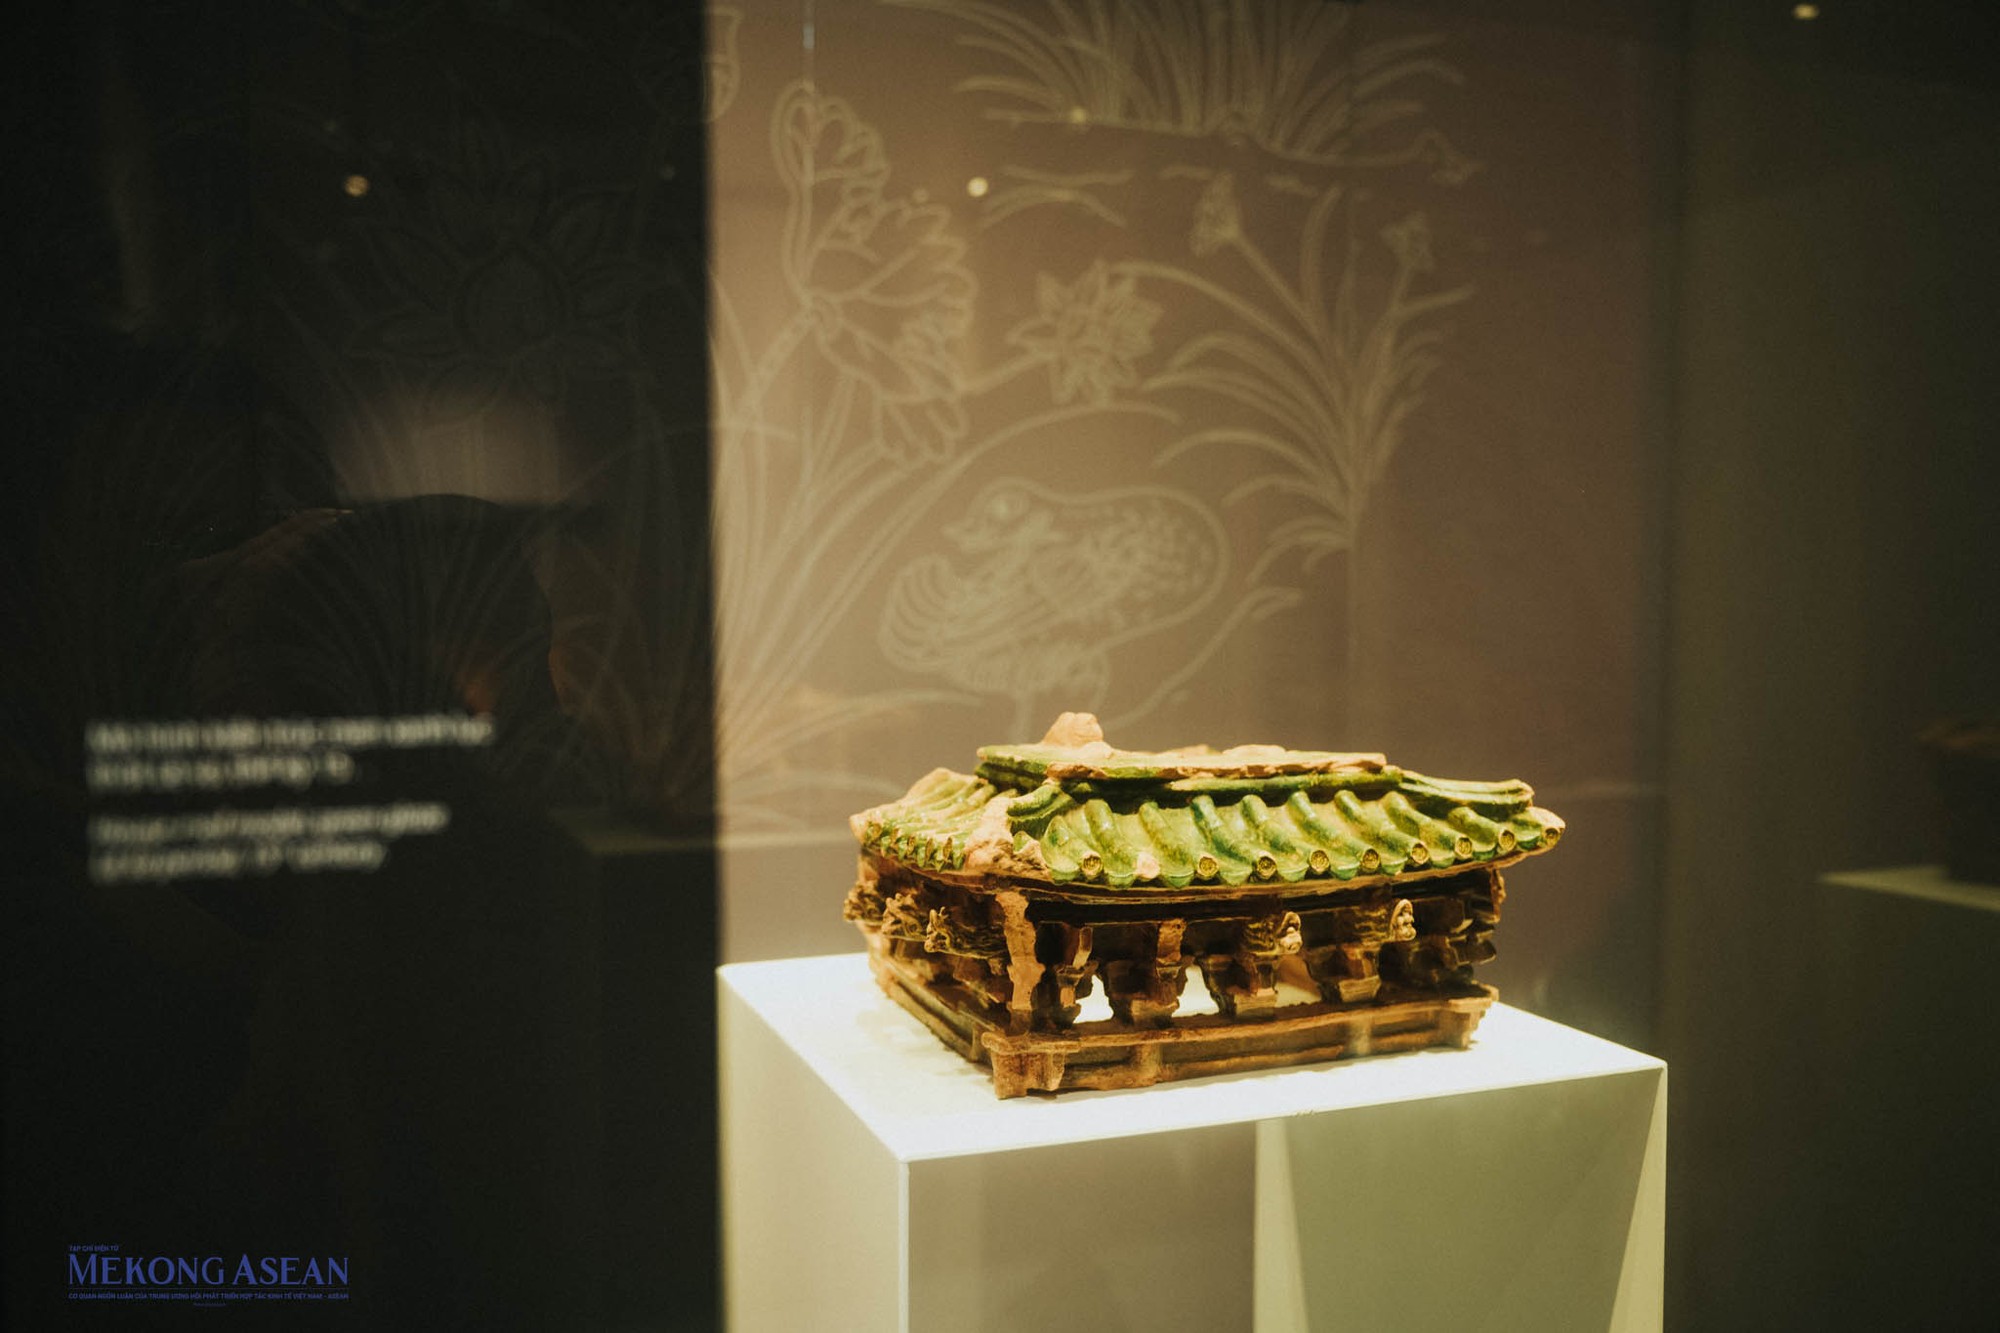 Ngoài một số sản phẩm dành riêng cho nhà vua, các mô hình, vật dùng tiêu biểu cho từng thời kỳ cũng góp mặt tại triển lãm như mô hình miêu tả kiến trúc nhà thời kỳ Lê Sơ thế kỷ 15.